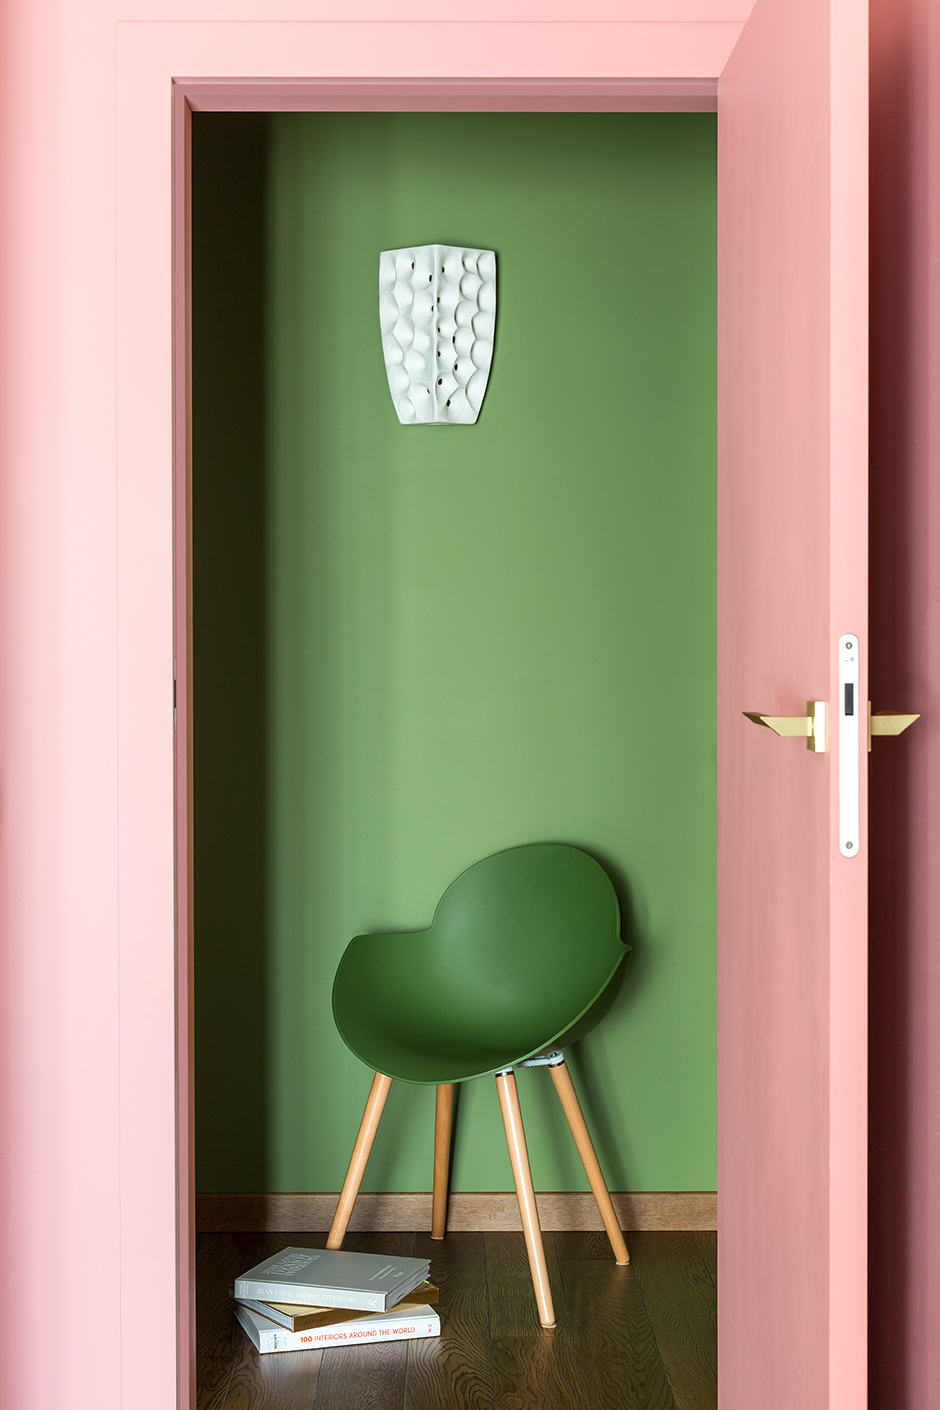 Cách đơn giản để phân vùng các khu vực bằng thị giác chính là sử dụng màu sắc. Ở căn hộ này, NTK nội thất đã chọn màu xanh lá để sơn tường và chiếc ghế xanh đánh dấu khu vực hành lang, kết hợp với sắc hồng điệu đà để tăng phần trẻ trung, nữ tính.